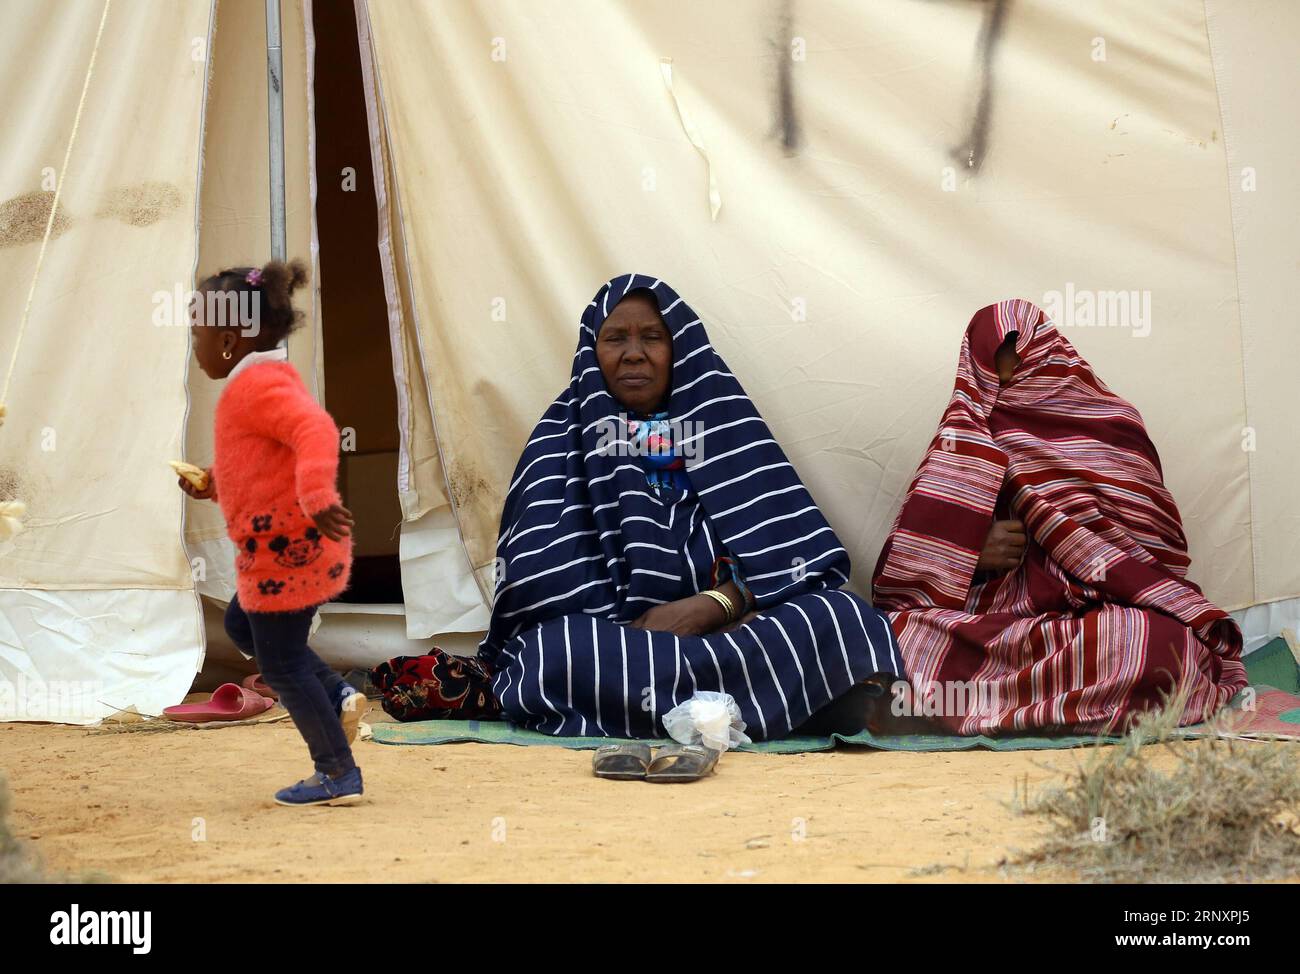 Bilder des Tages Libyen : Vertriebene aus Tawurga leben nahe Bani Walid in Zelten (180208) -- TRIPOLI (LIBYE), 8 février 2018 -- des personnes déplacées de Tawergha ont été vues dans un camp près de la ville de Bani Walid, Libye, le 8 février 2018. Le Premier ministre libyen, soutenu par l ONU, Fayez Serraj, a condamné dimanche l attaque de groupes armés contre les familles déplacées de Tawergha, près de la ville de Bani Walid, à environ 180 km au sud-ouest de la capitale Tripoli. LIBYE-BANI WALID-FAMILLES DÉPLACÉES HamzaxTurkia PUBLICATIONxNOTxINxCHN Banque D'Images